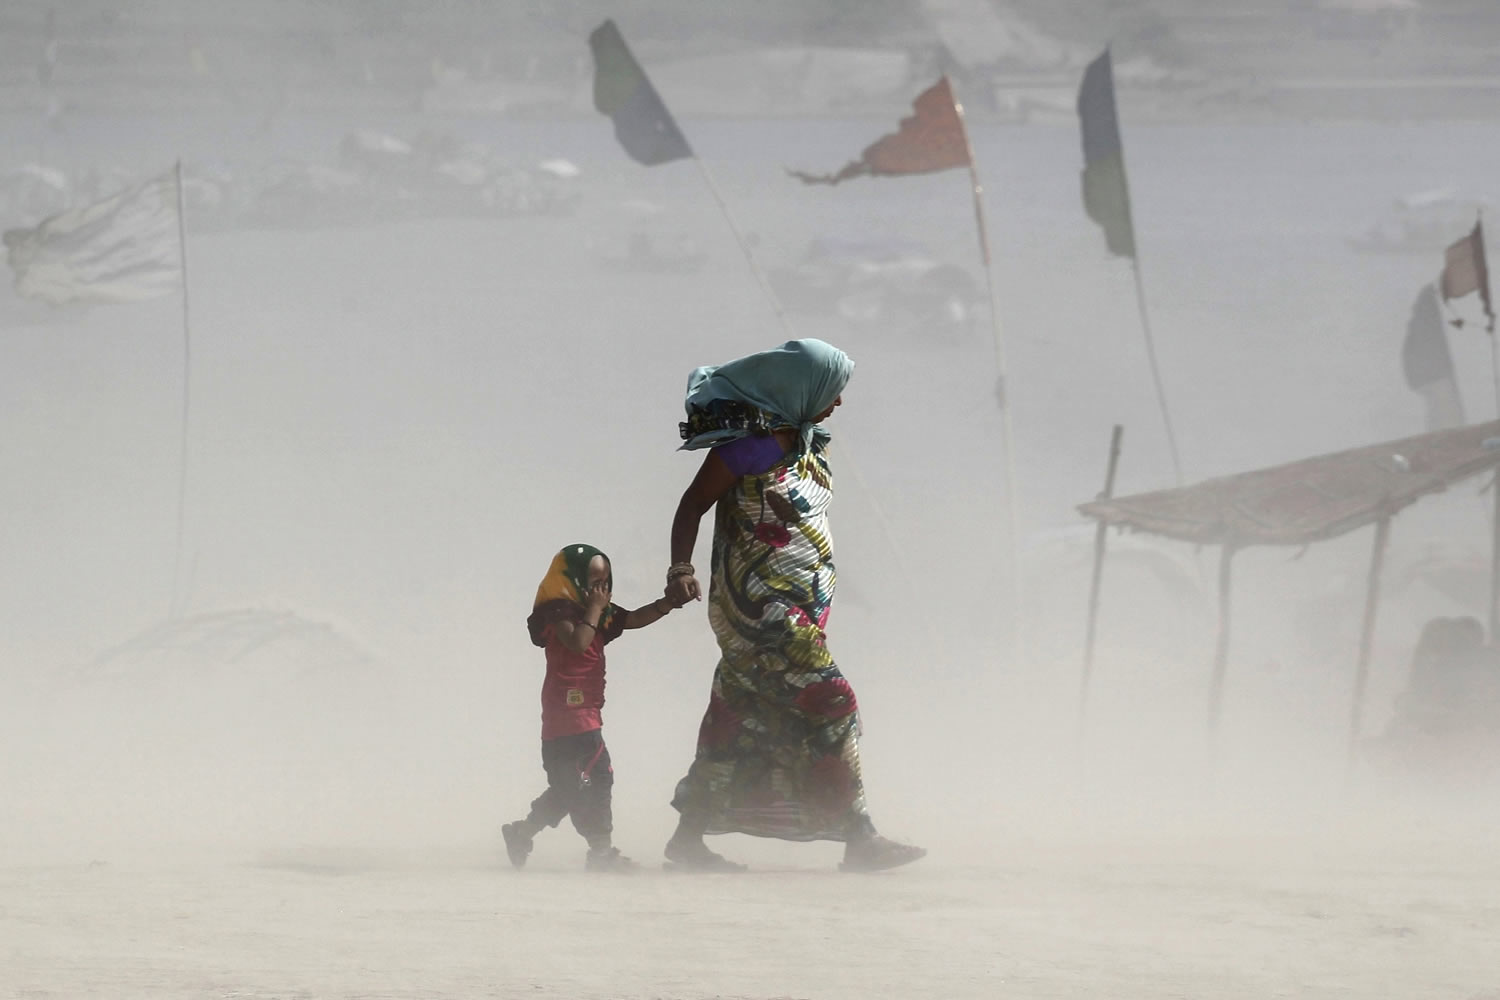 1800 muertos por semana: India espera que la asfixiante ola de calor traiga las lluvias monzónicas